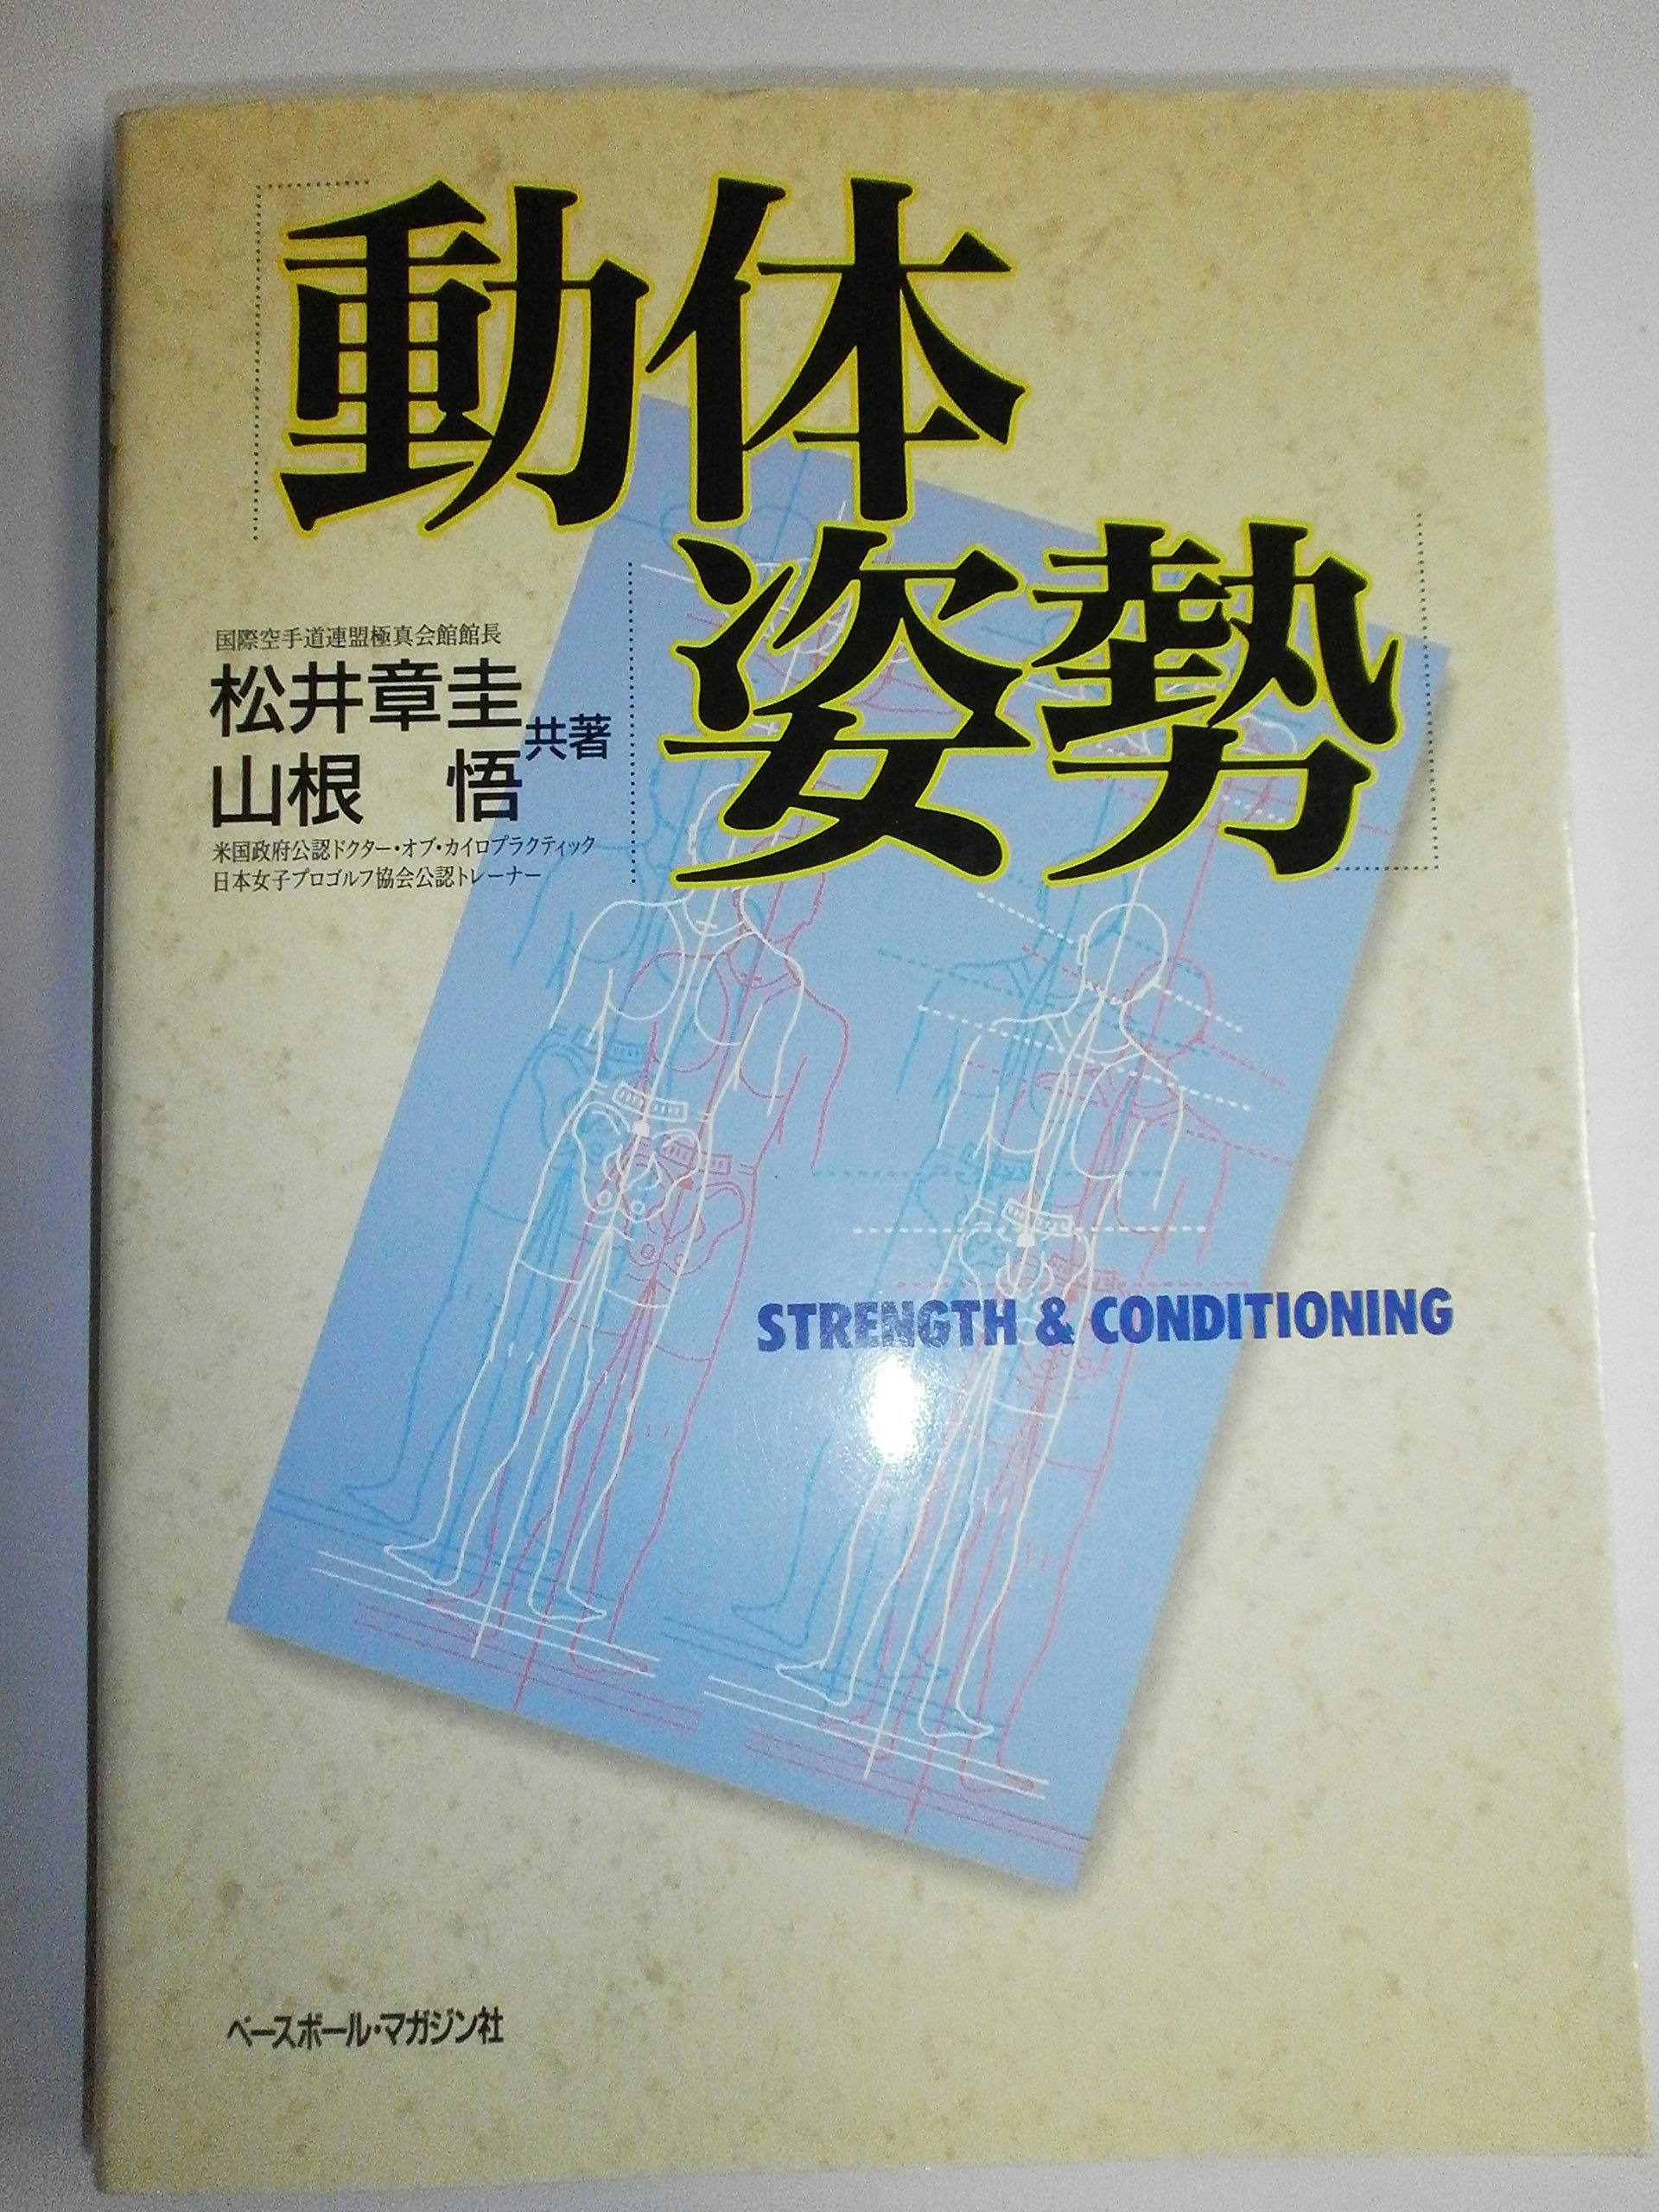 動体姿勢―STRENGTH & CONDITIONING (BBM science books)